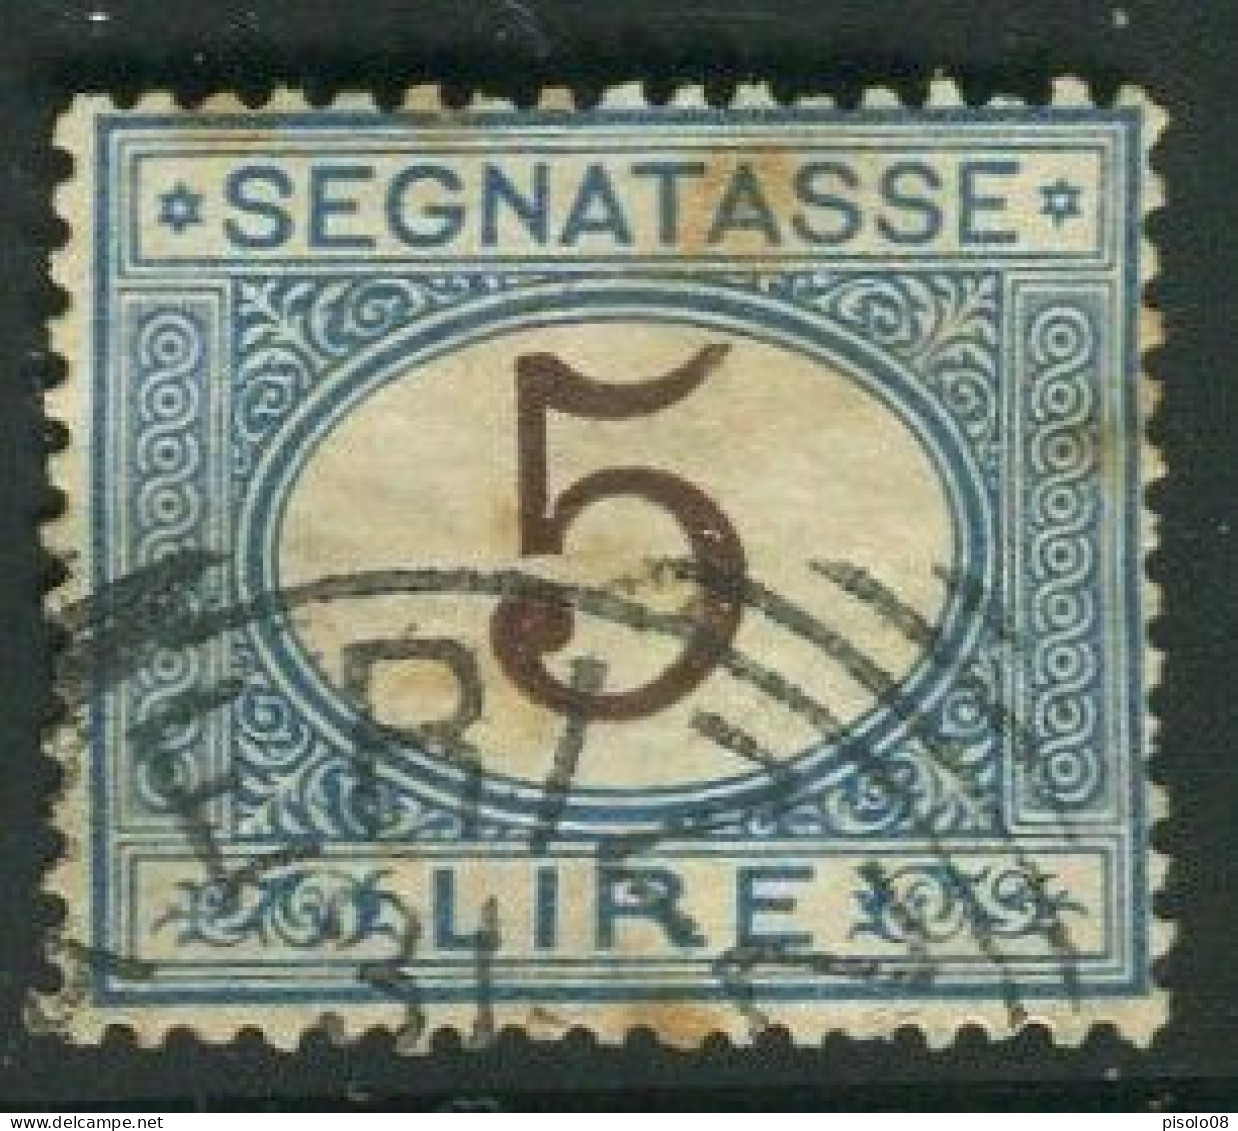 REGNO 1870-94 SEGNATASSE 5 LIRE USATO - Taxe